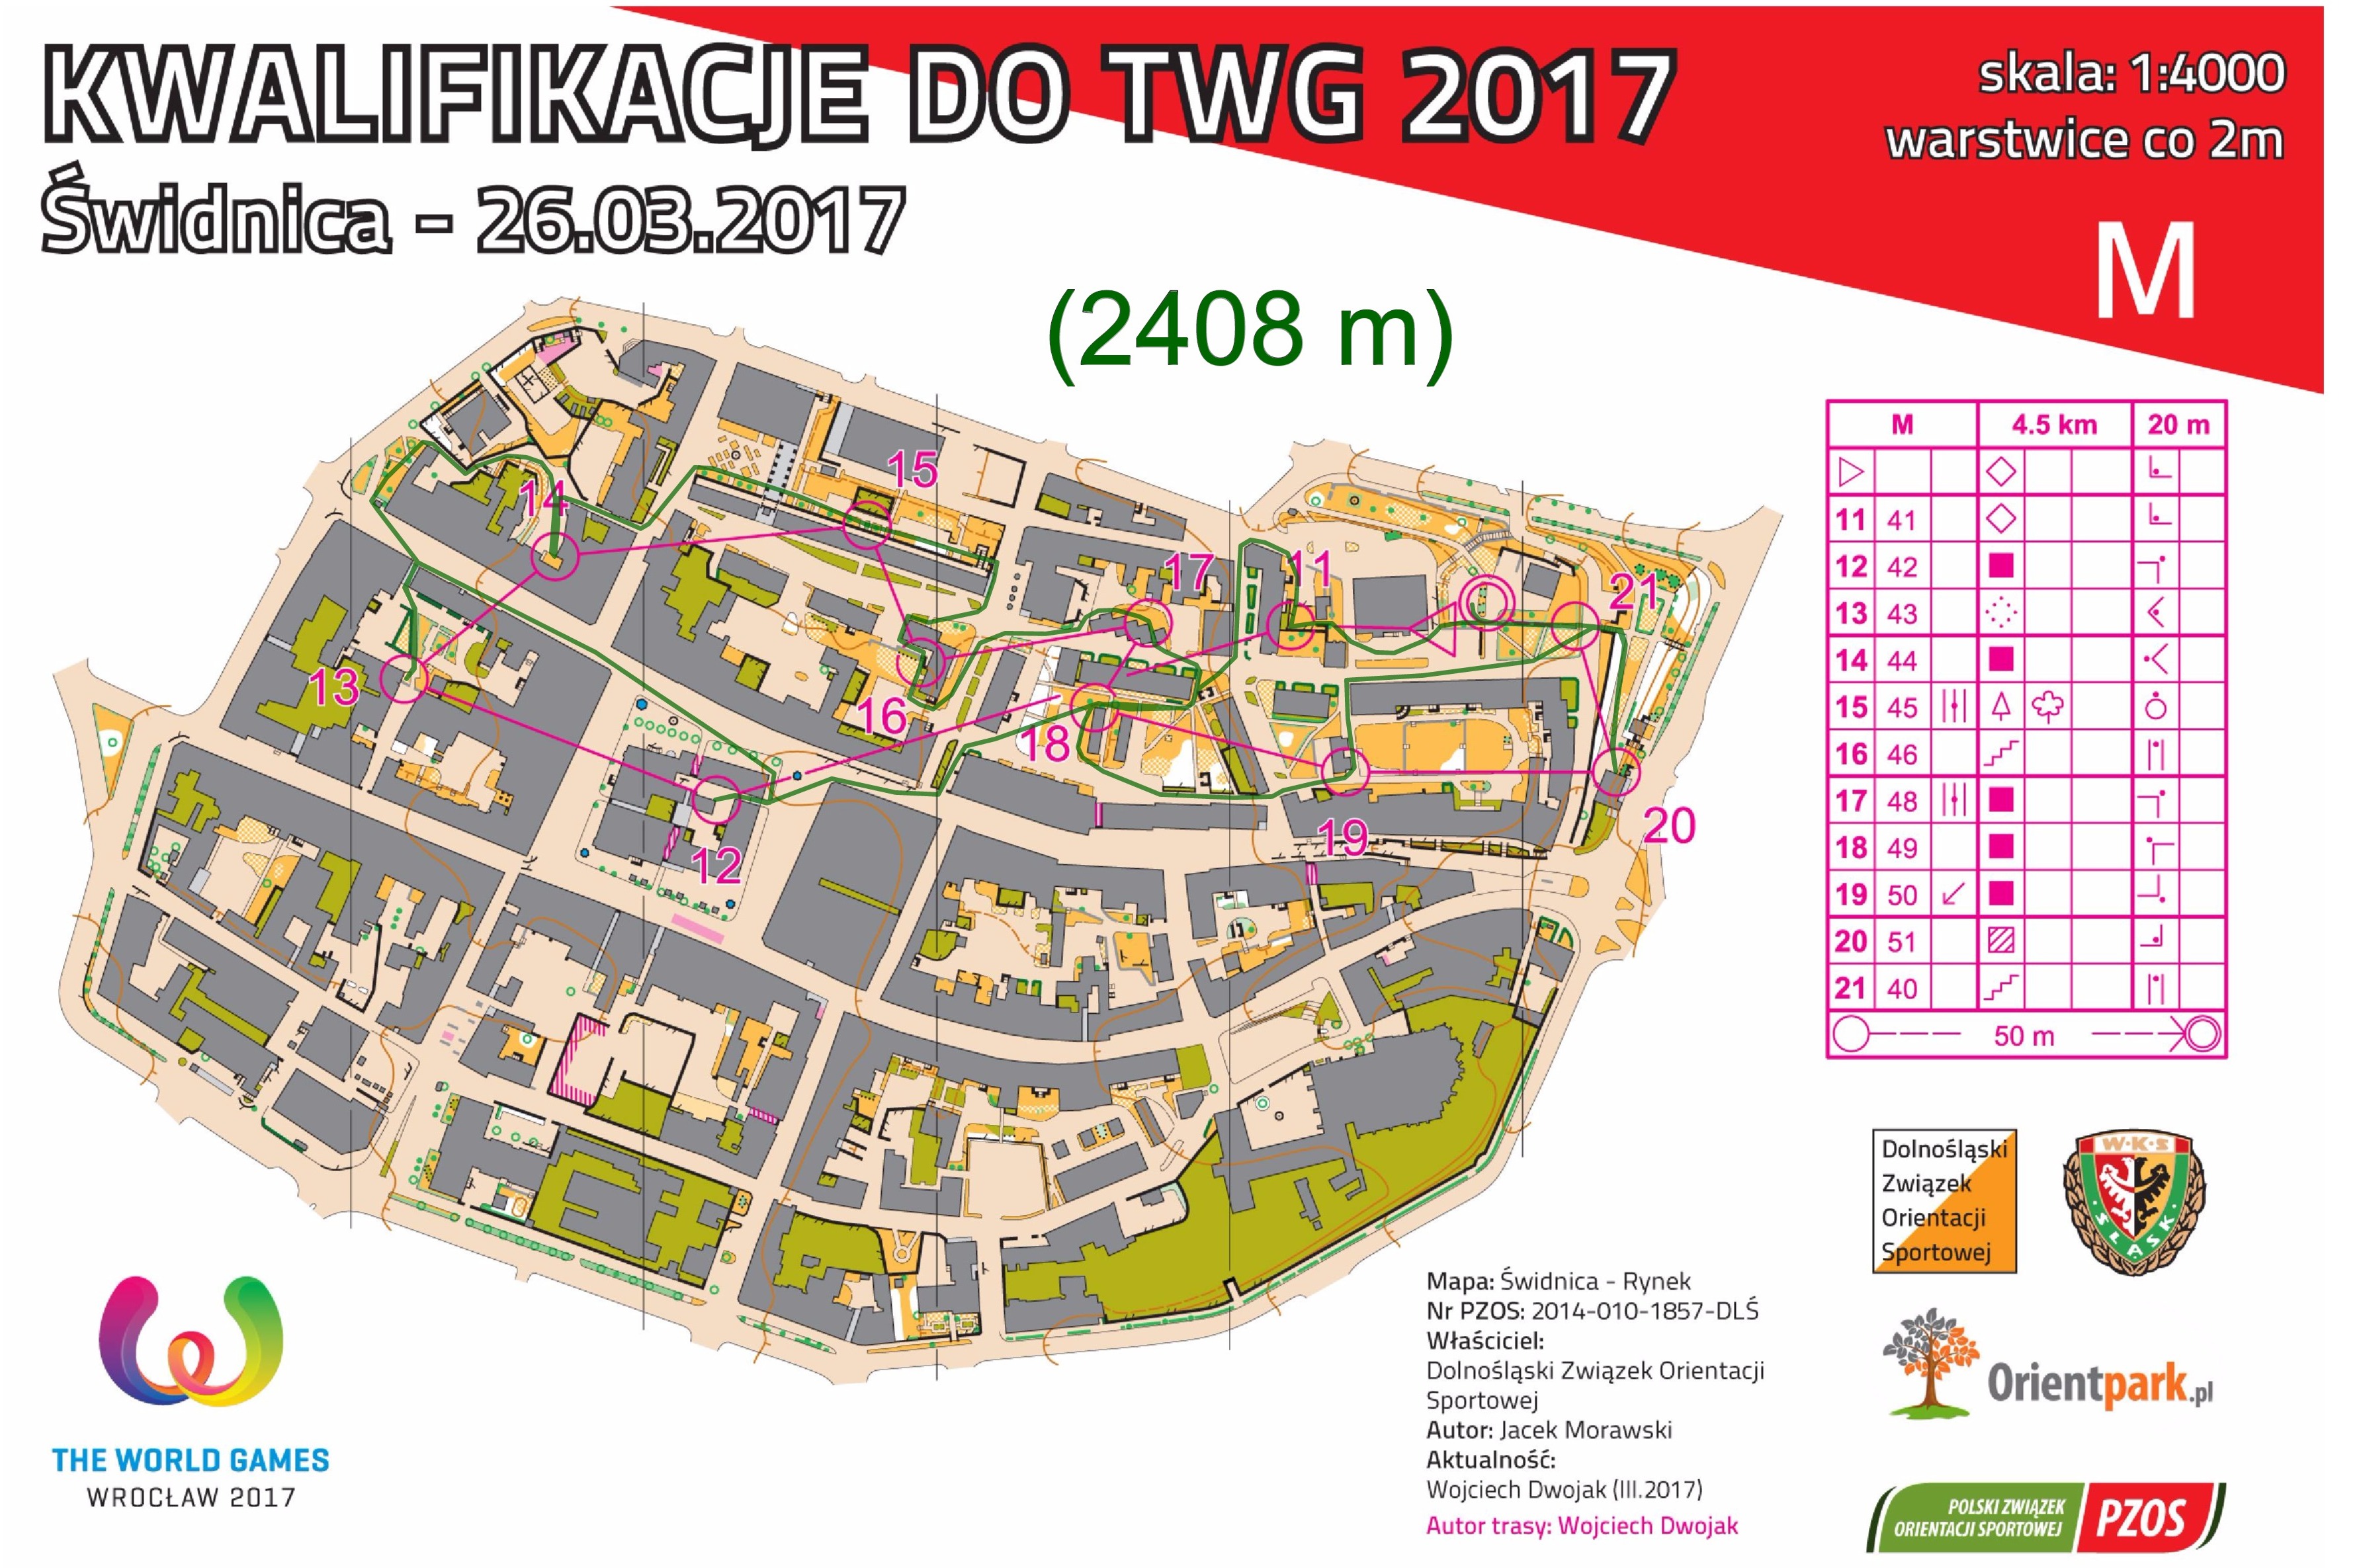 kwalifikacje do TWG - sprint #2, cz. II (26.03.2017)